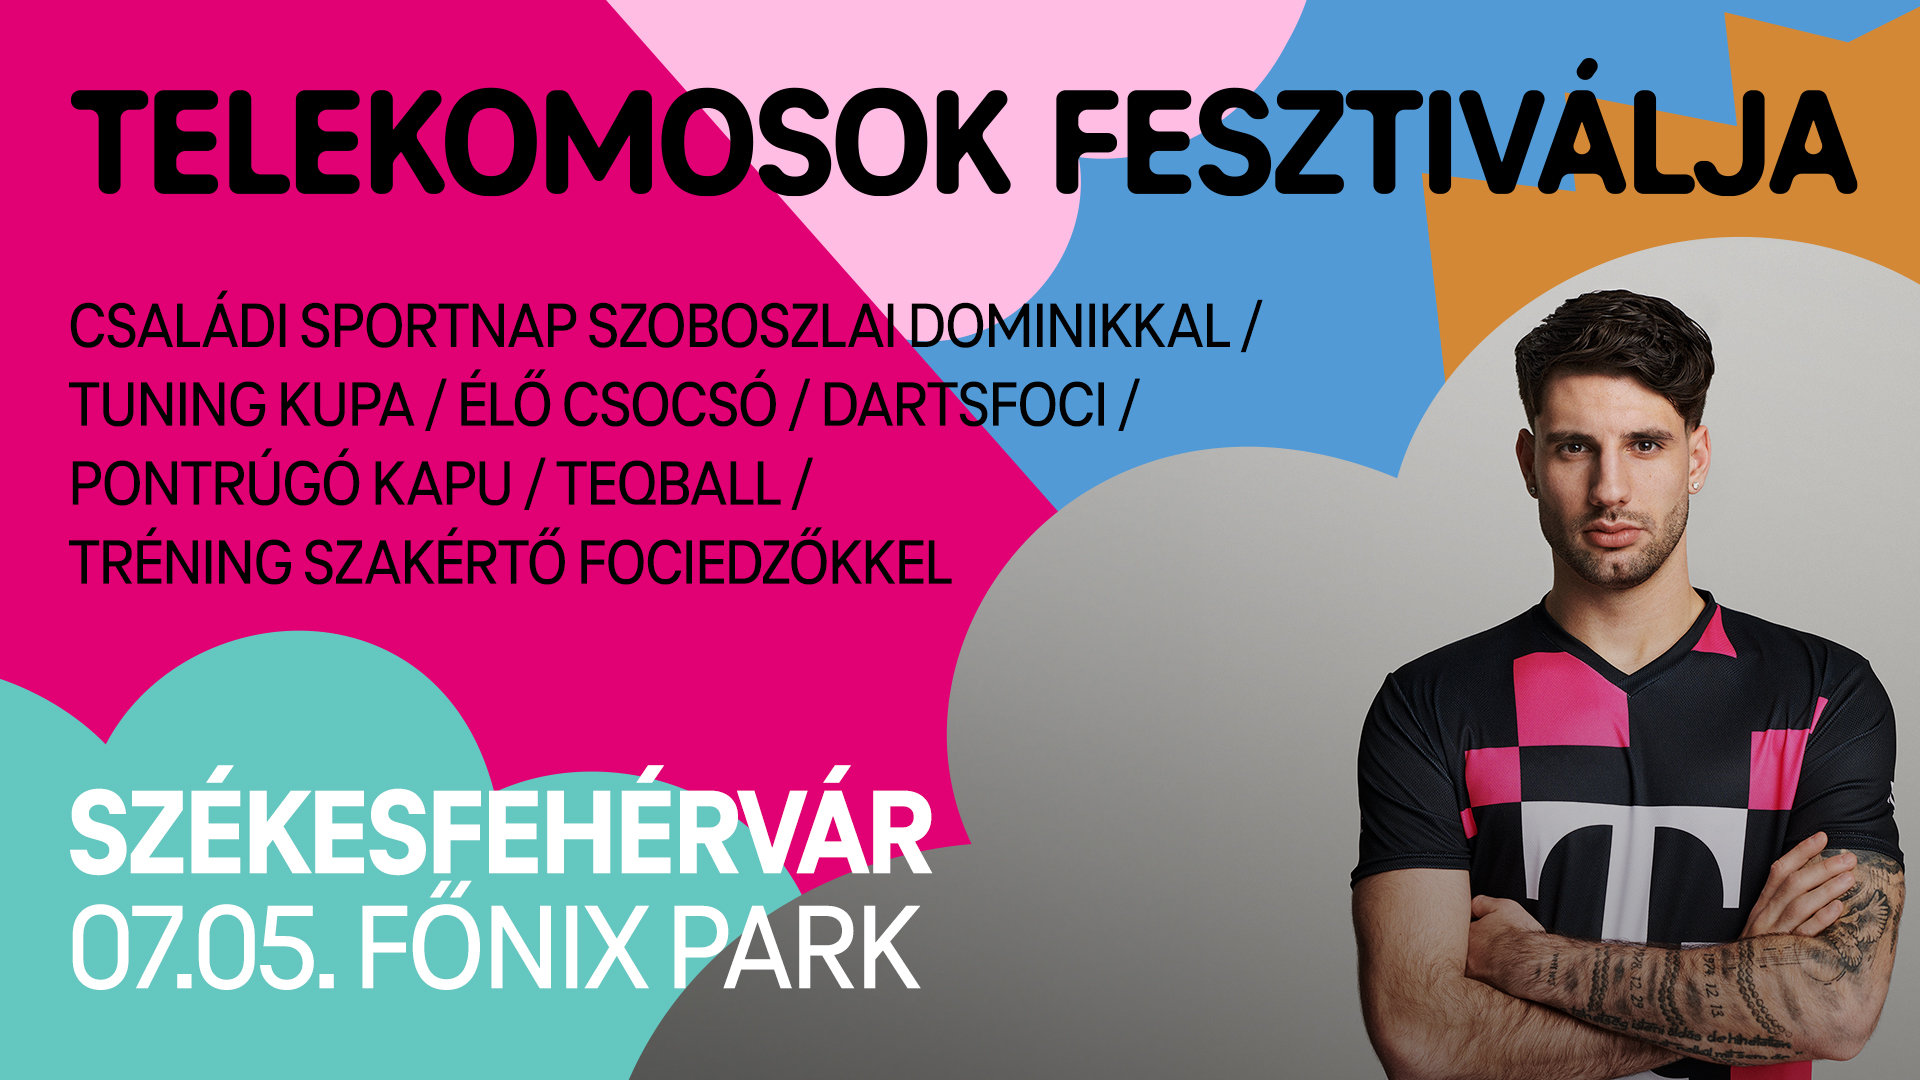 Tuningold a nyarad! - Telekomosok Fesztiválja pénteken a Főnix Parkban